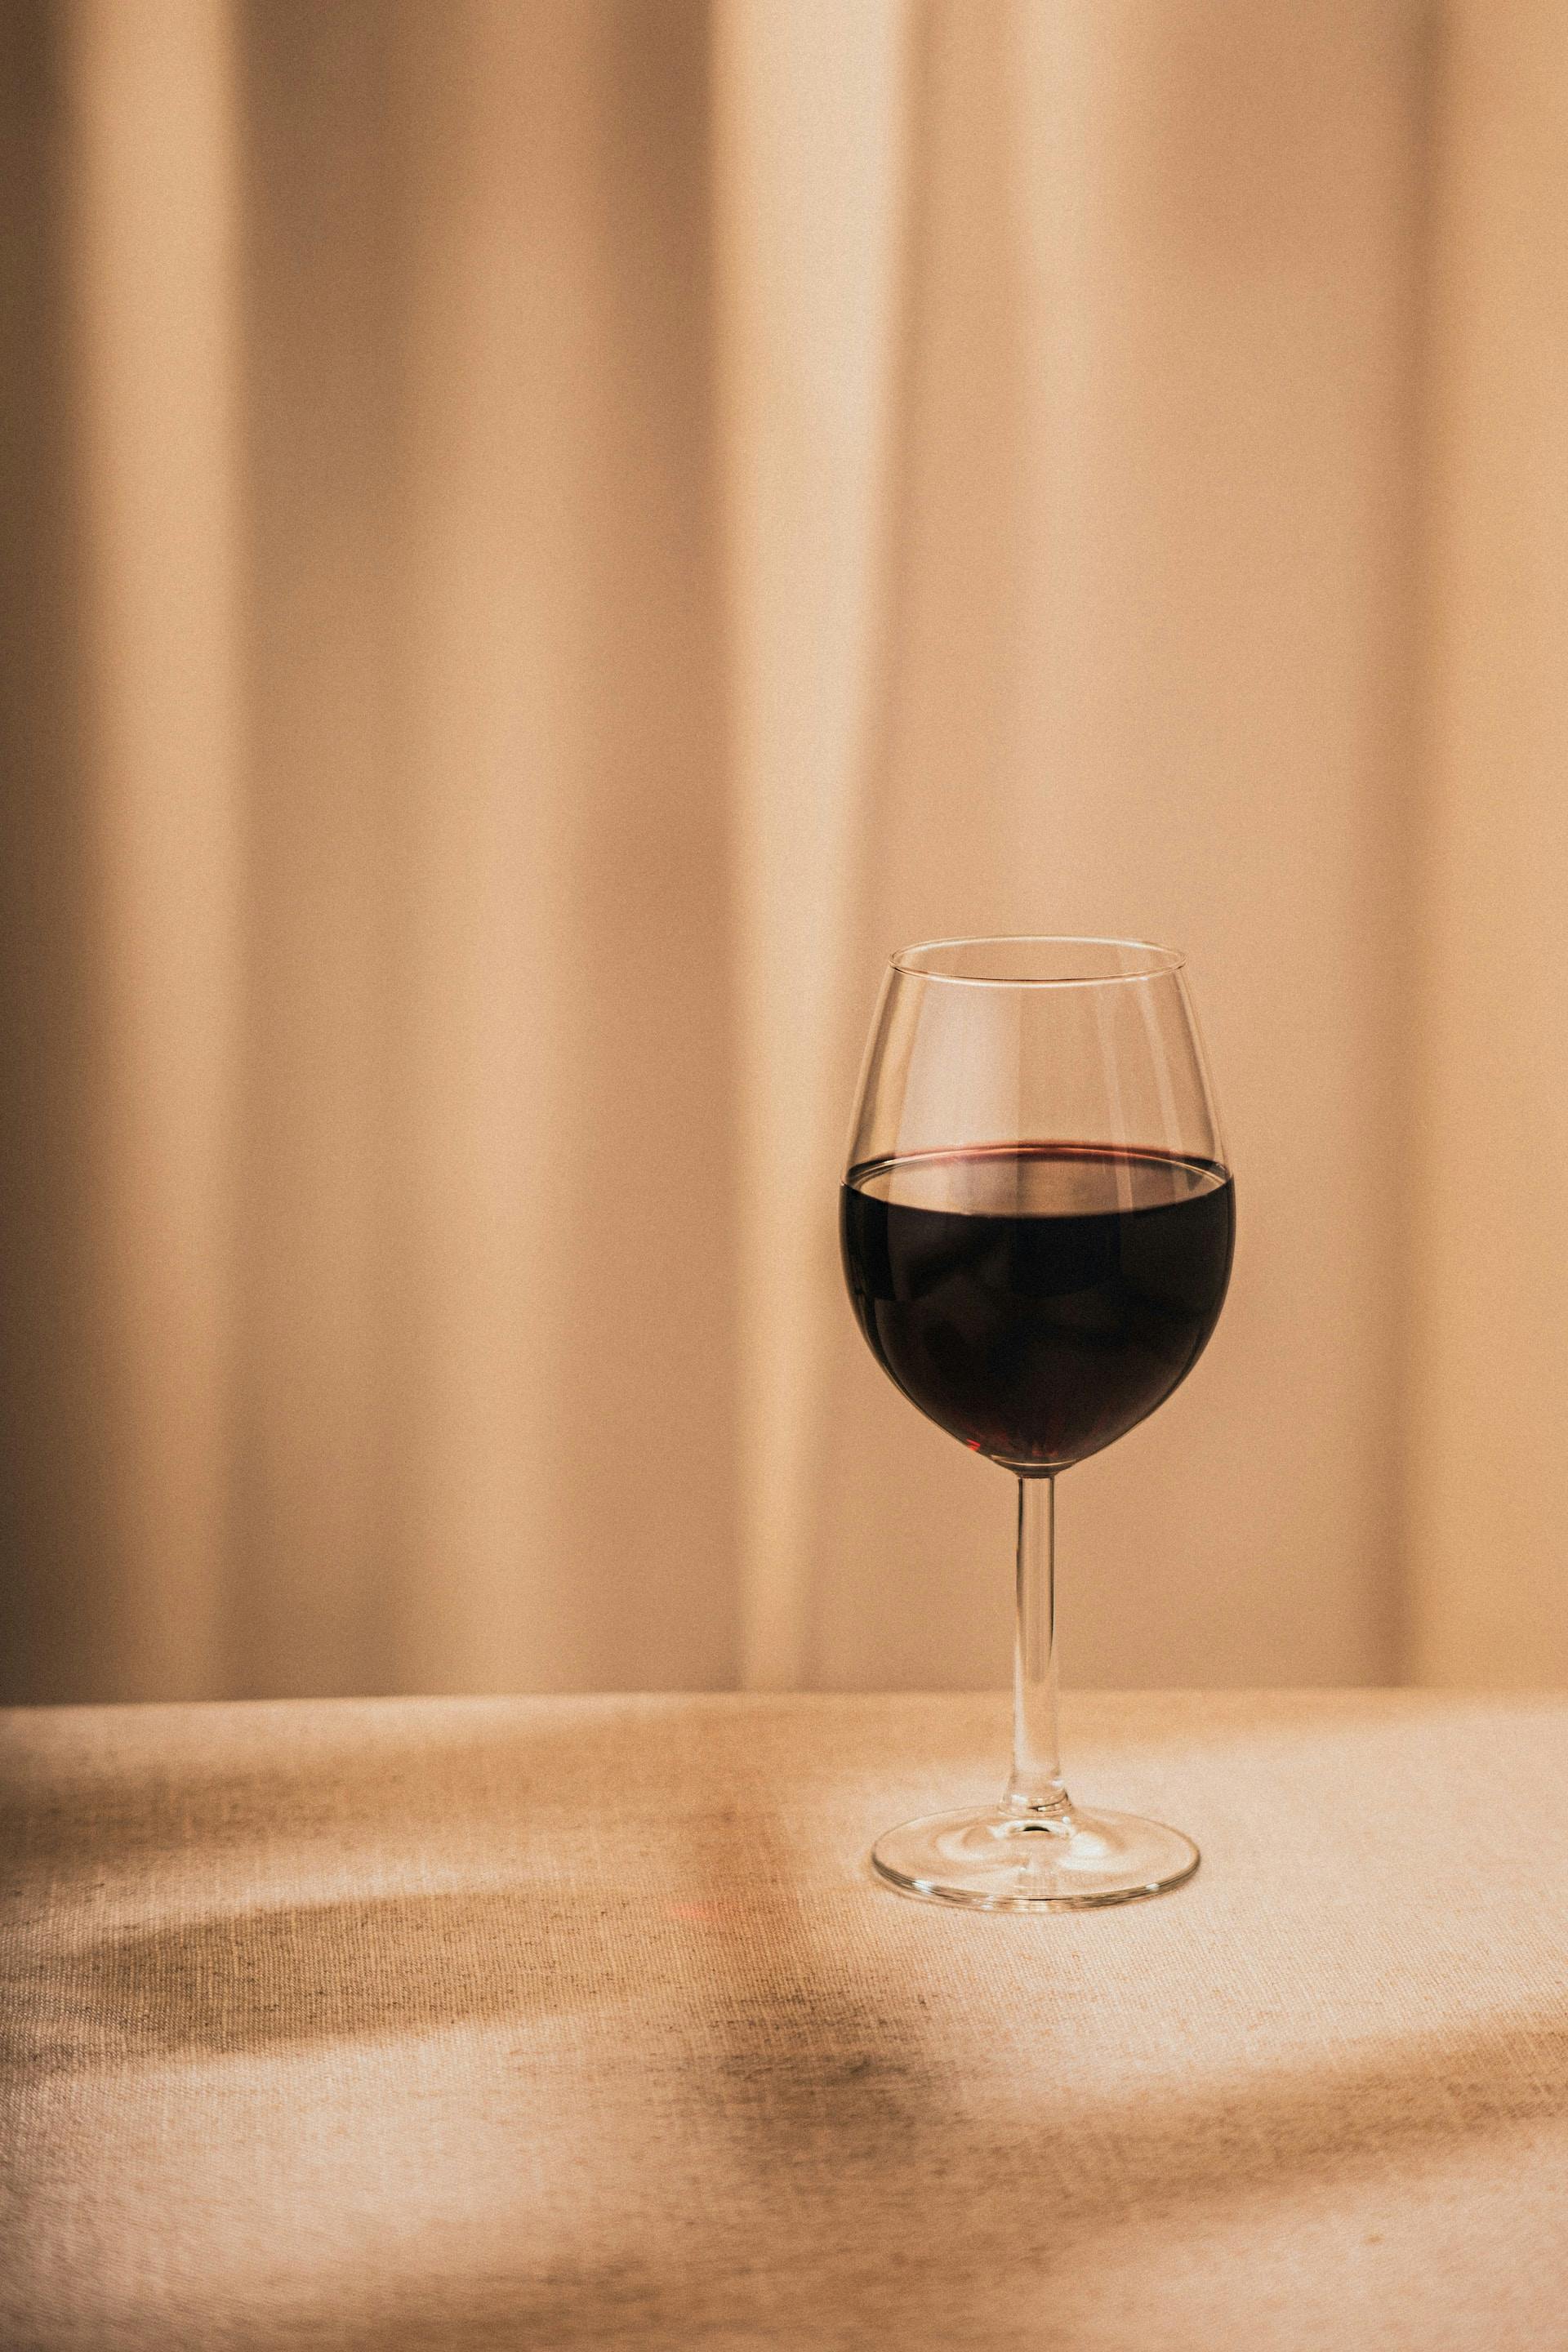 Weinglas mit dunkelroter Flüssigkeit drinnen